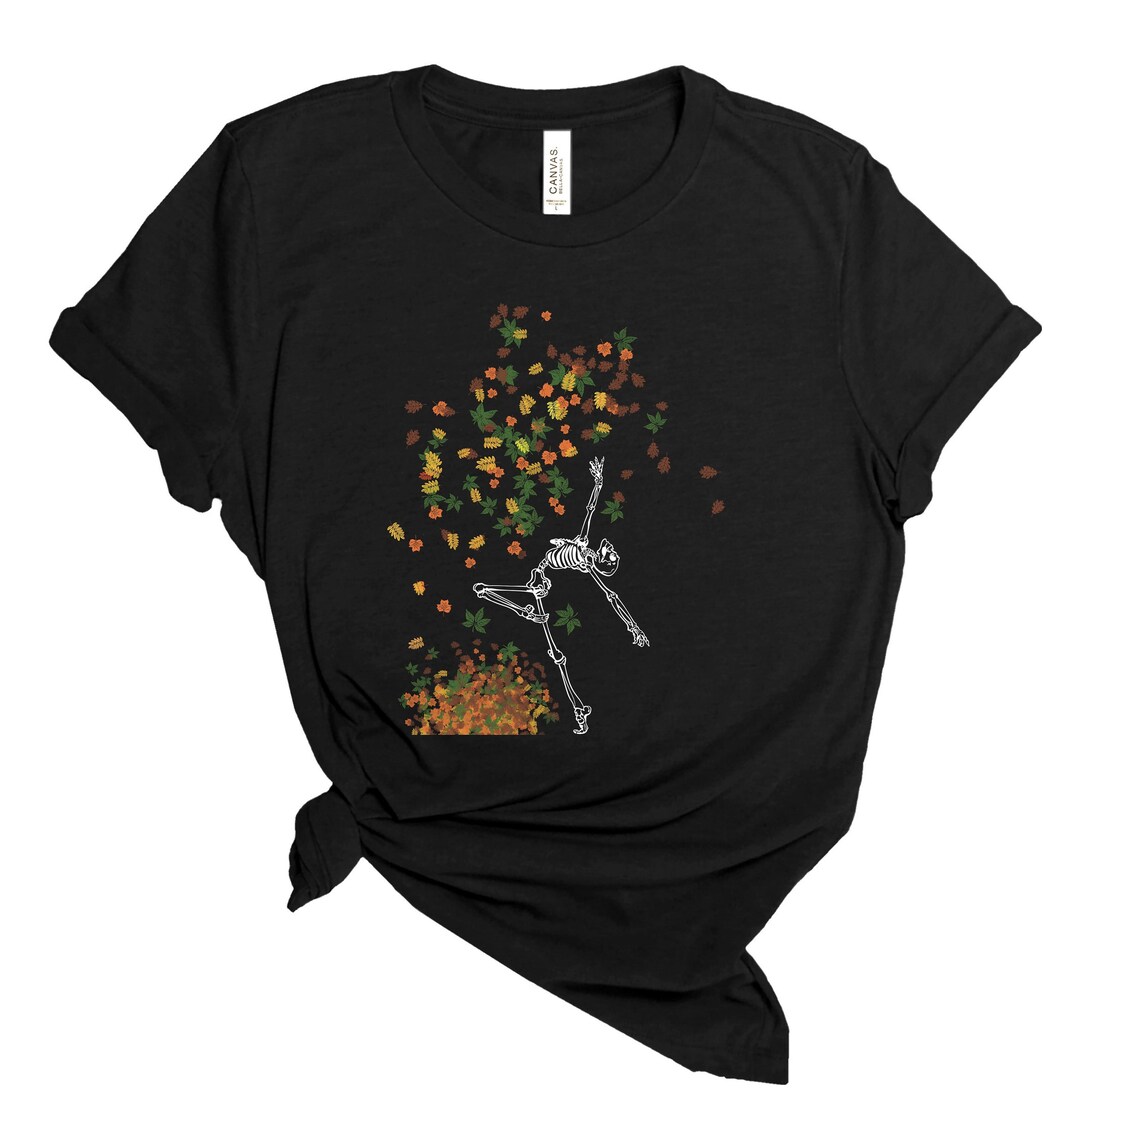 Dancing Skeleton Shirt, Skeleton Sweatshirt, Cute Halloween Shirt, Fall Shirt, Funny Halloween Sweatshirt